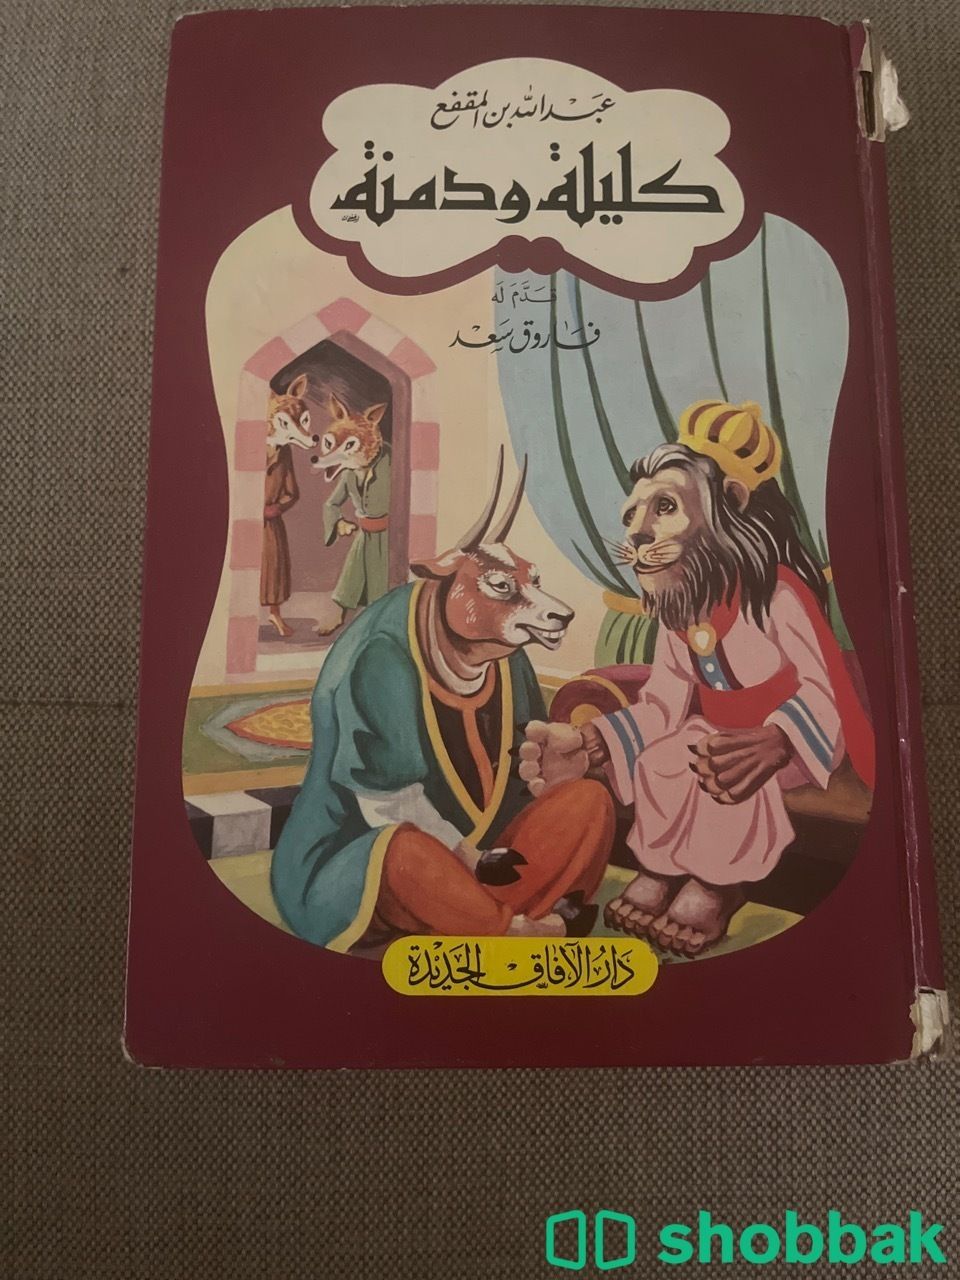 كتاب كليلة ودمنة شباك السعودية